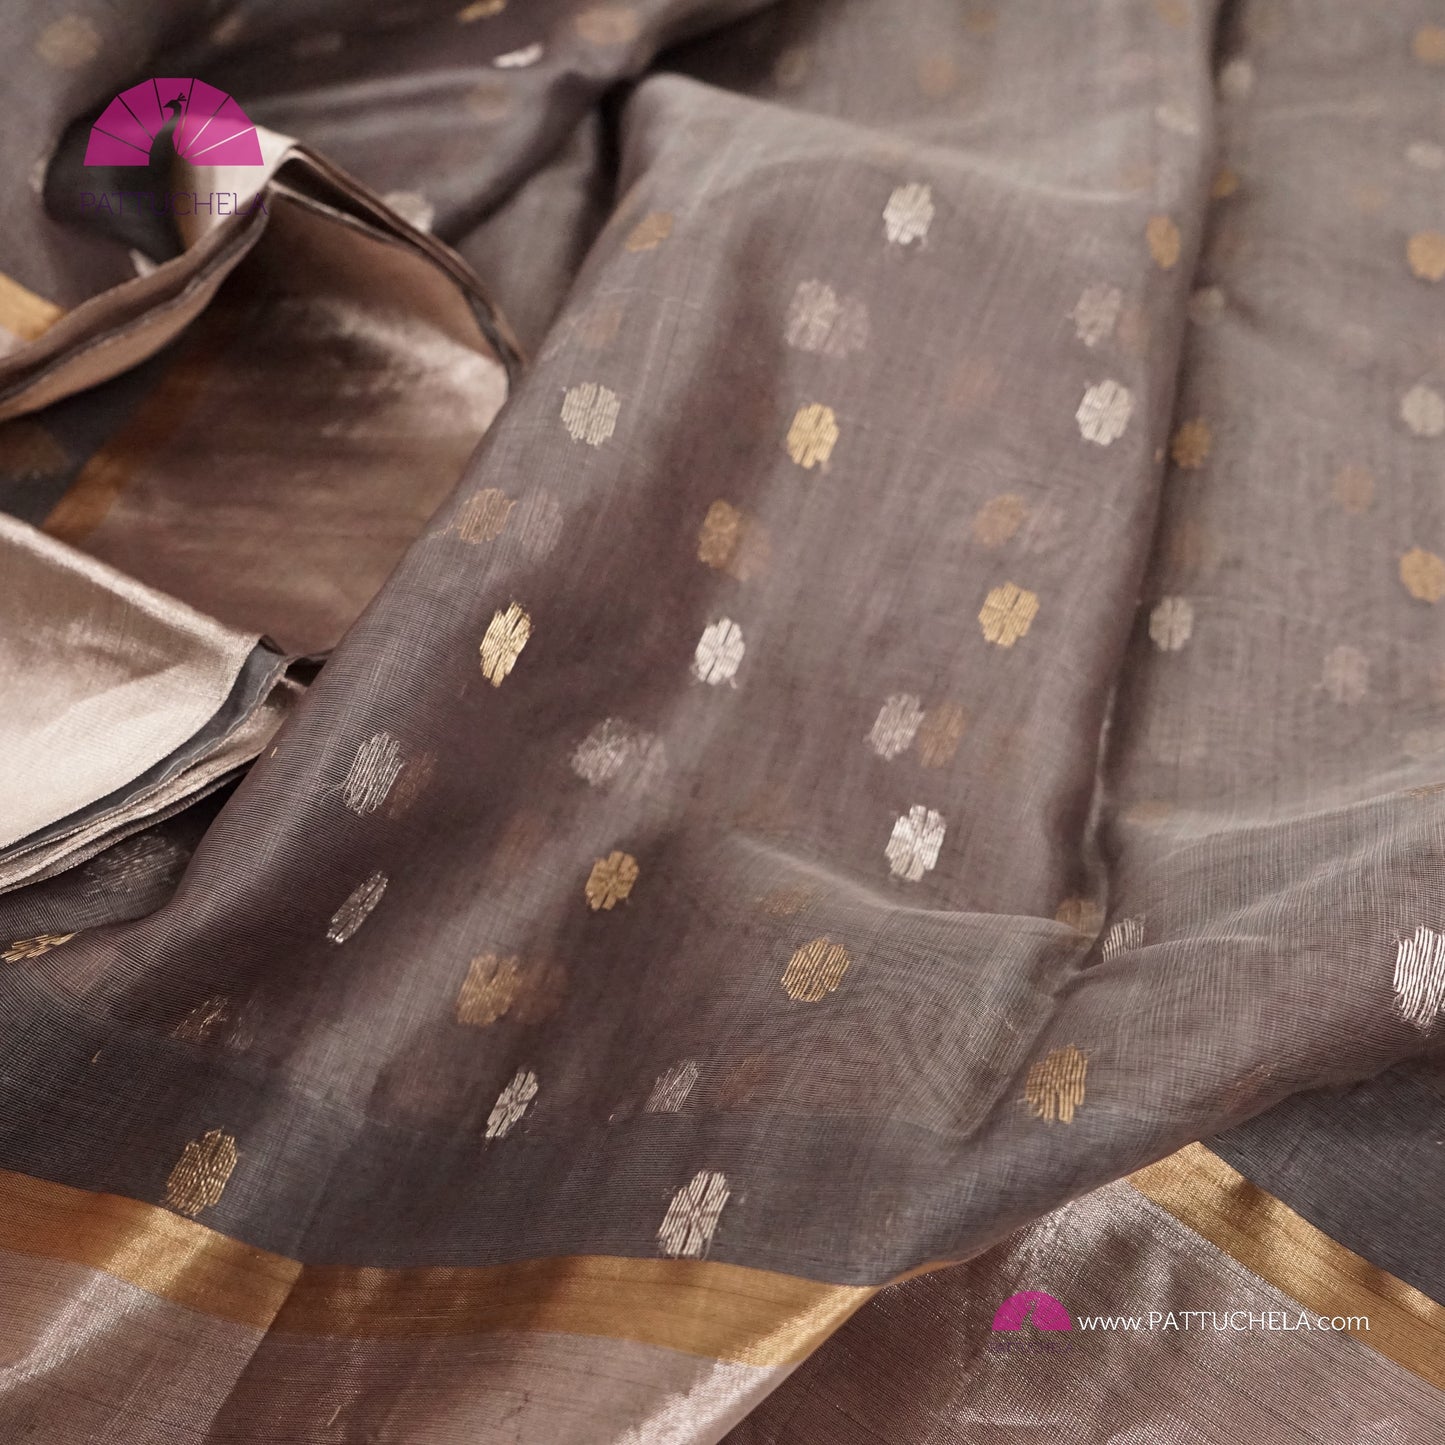 Grey Chanderi Katan Silk Handloom Saree with Sona Rupa motifs and Gold Metallic Grey Bavanchi Borders